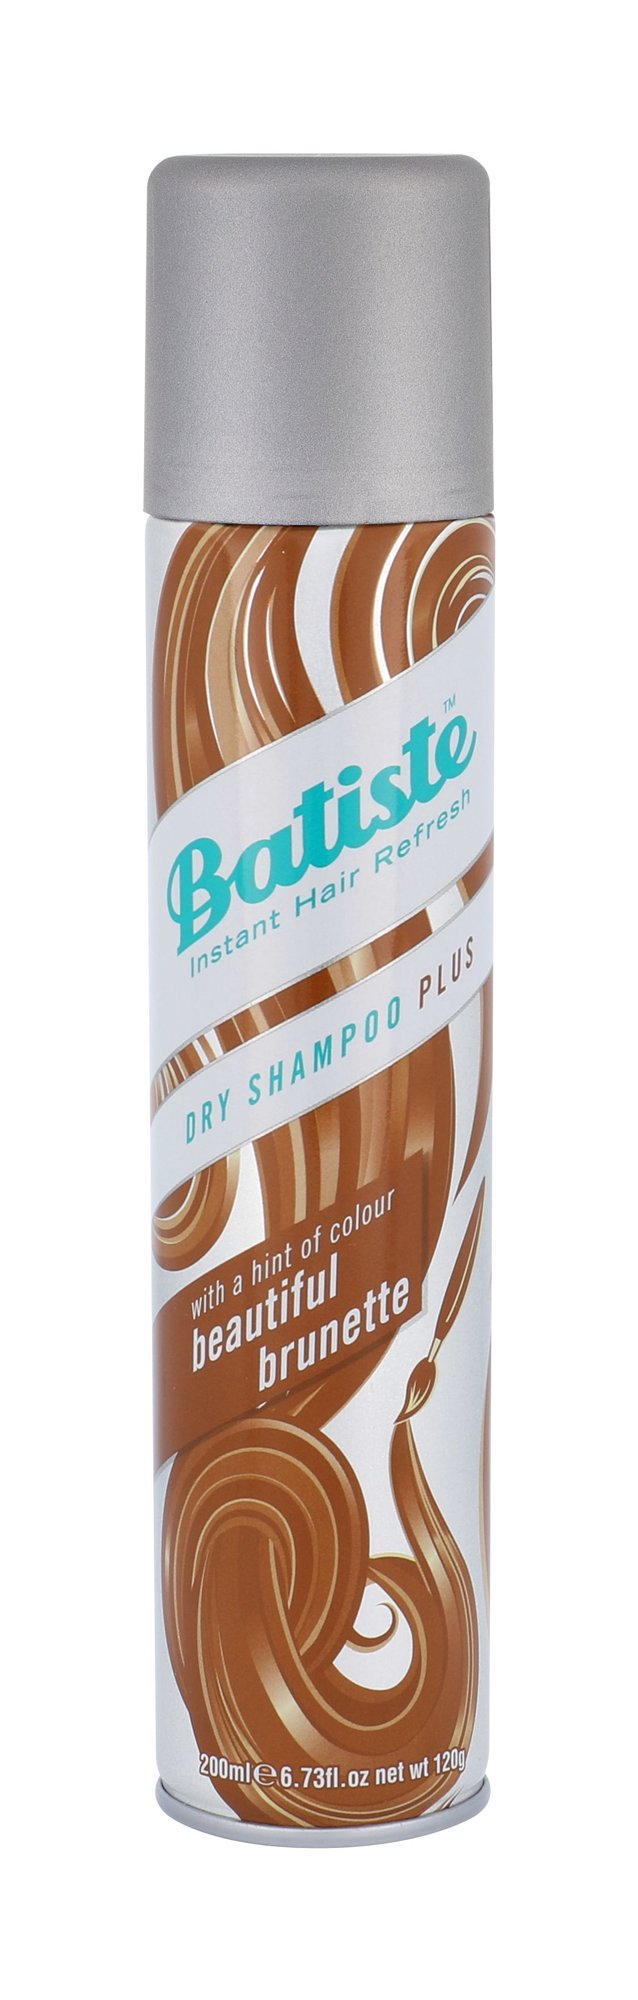 Batiste Dry Shampoo Plus Beautiful Brunette suchy szampon do brązowych odcieni 200 ml